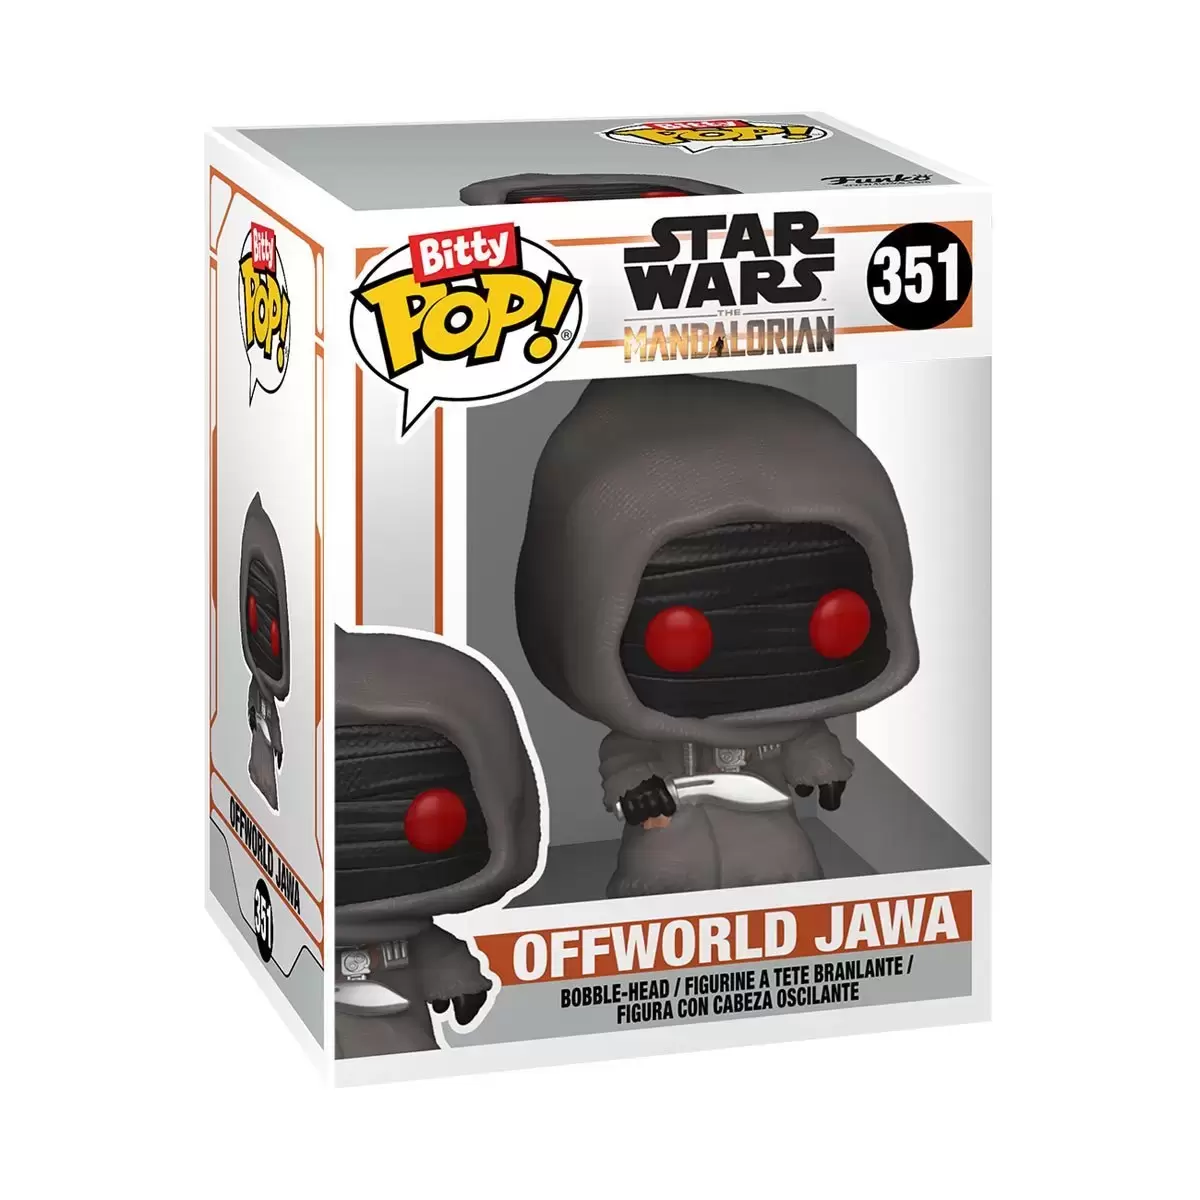 Bitty POP! - Star Wars - Offworld Jawa